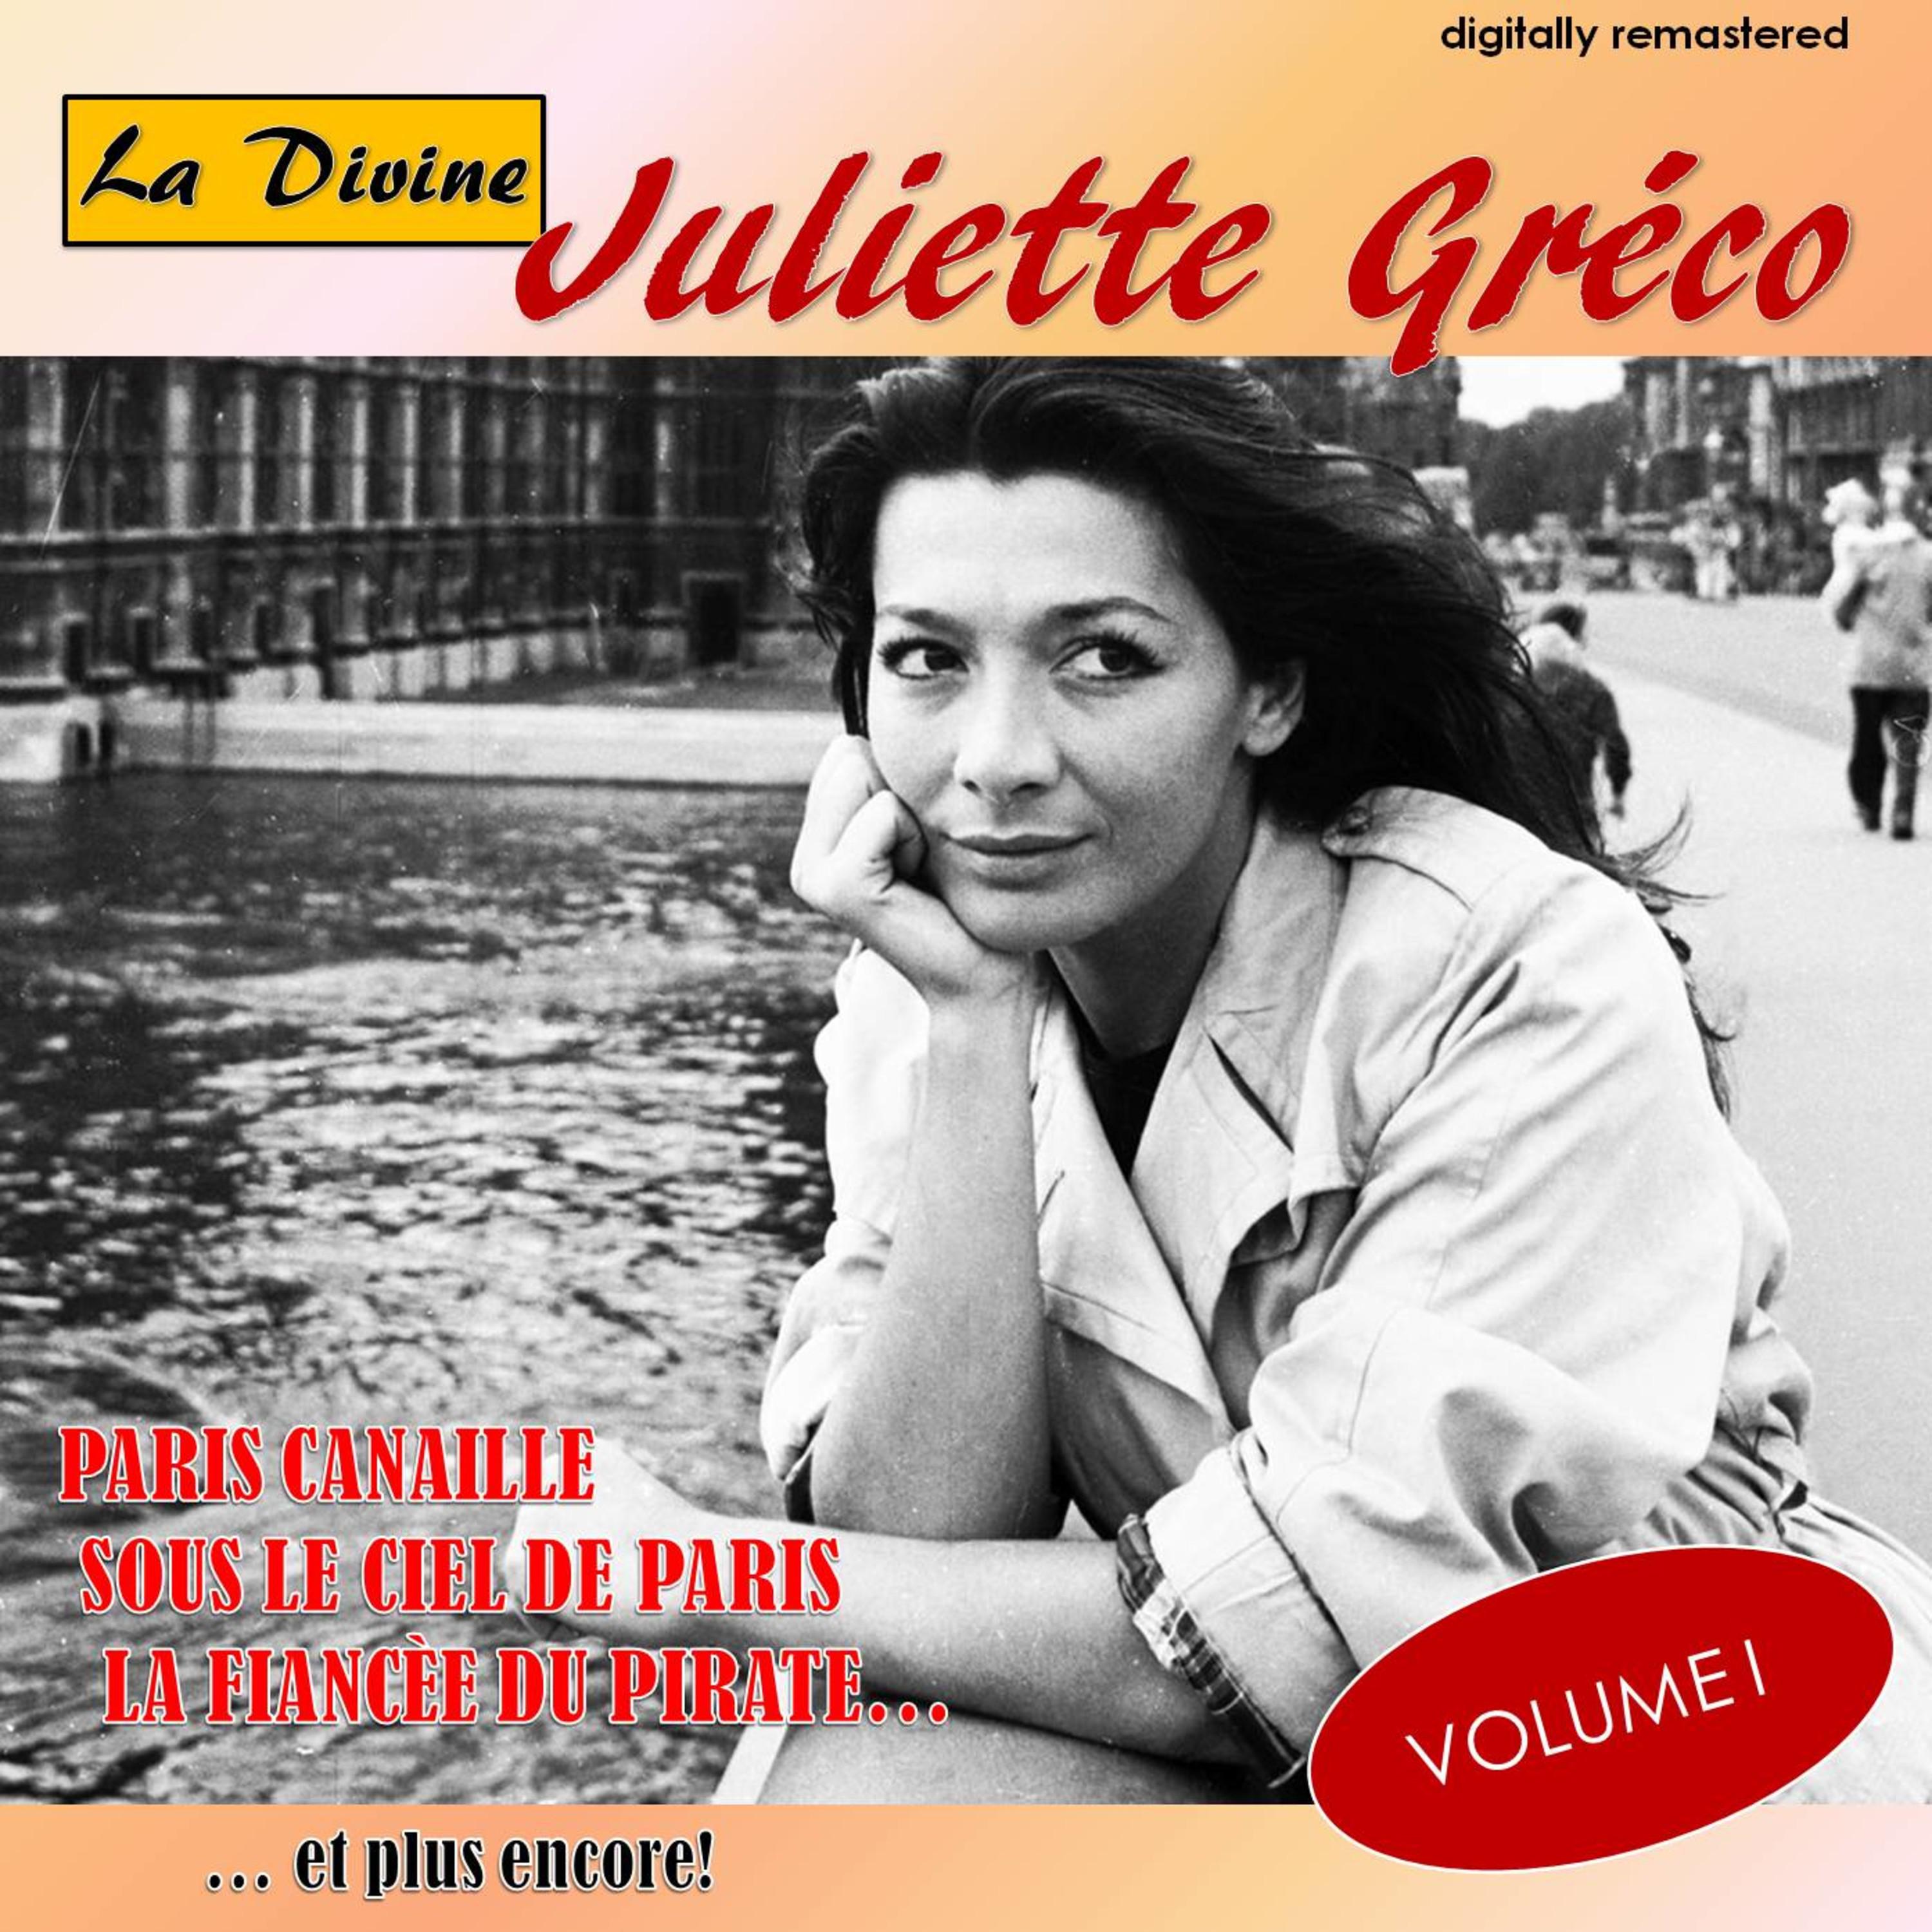 La Divine Juliette Gre co, Vol. 1 Digitally Remastered